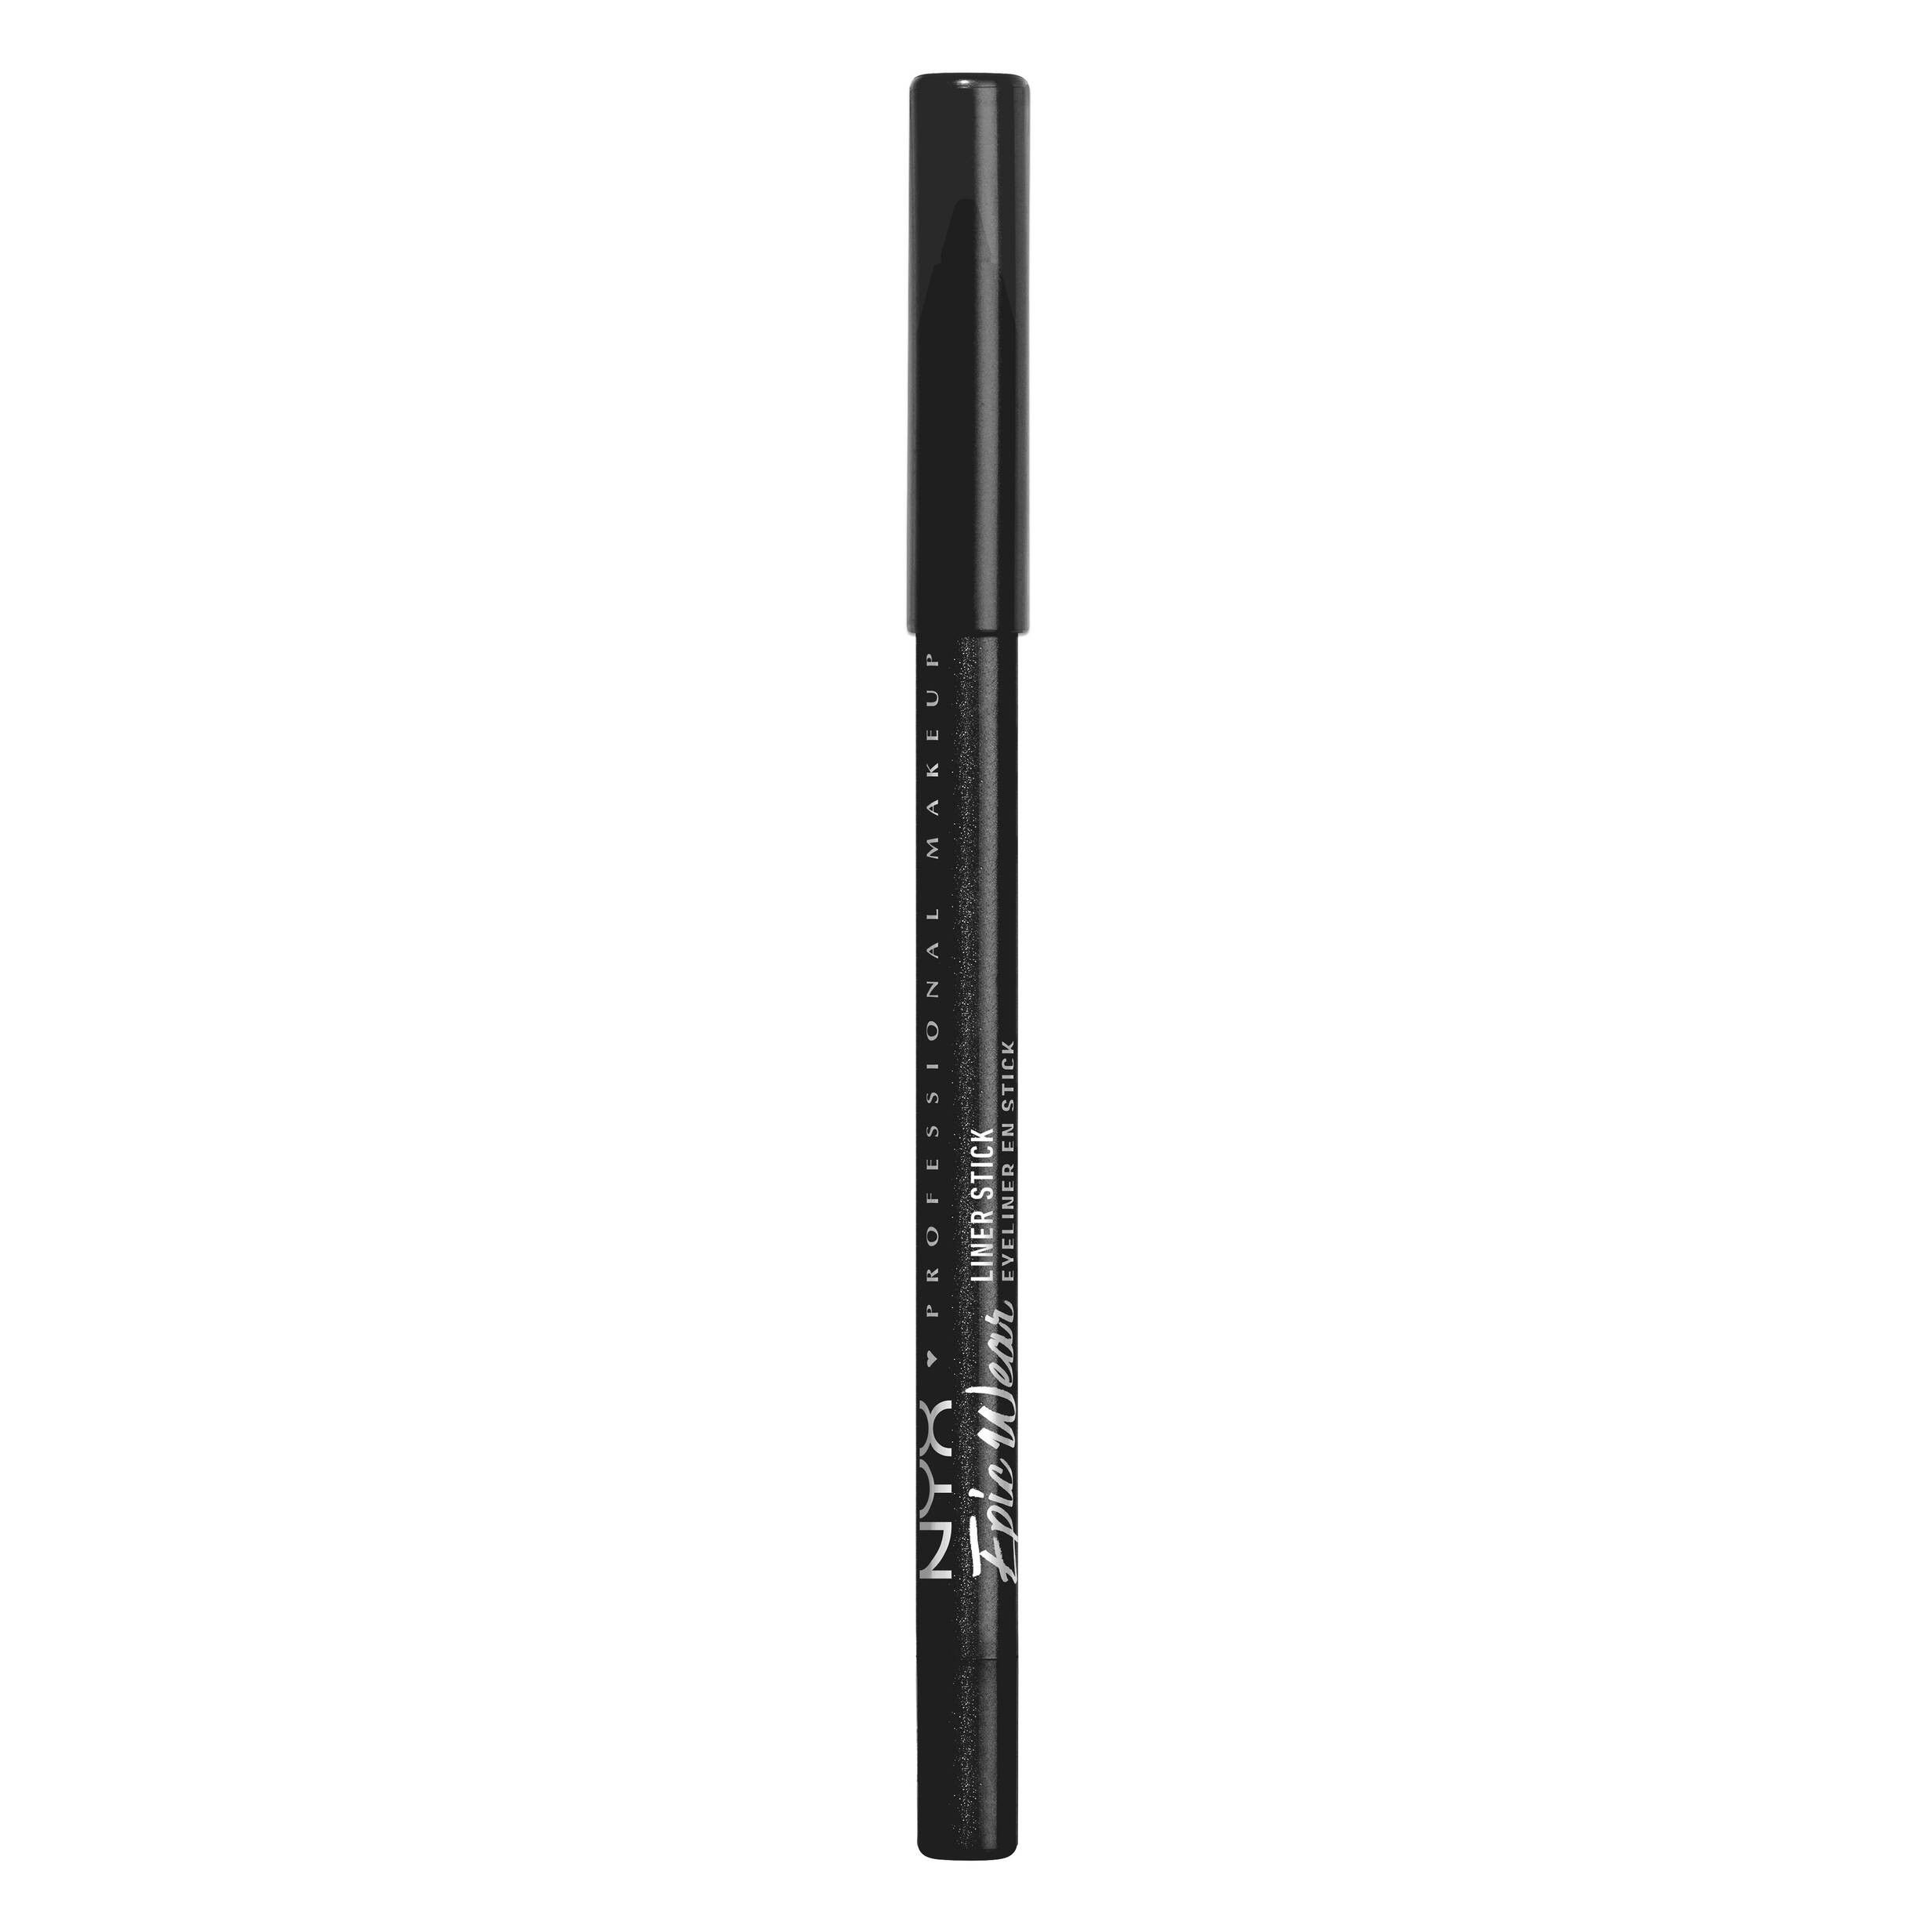 Eyeliner-Stift - Epic Wear Liner Stick